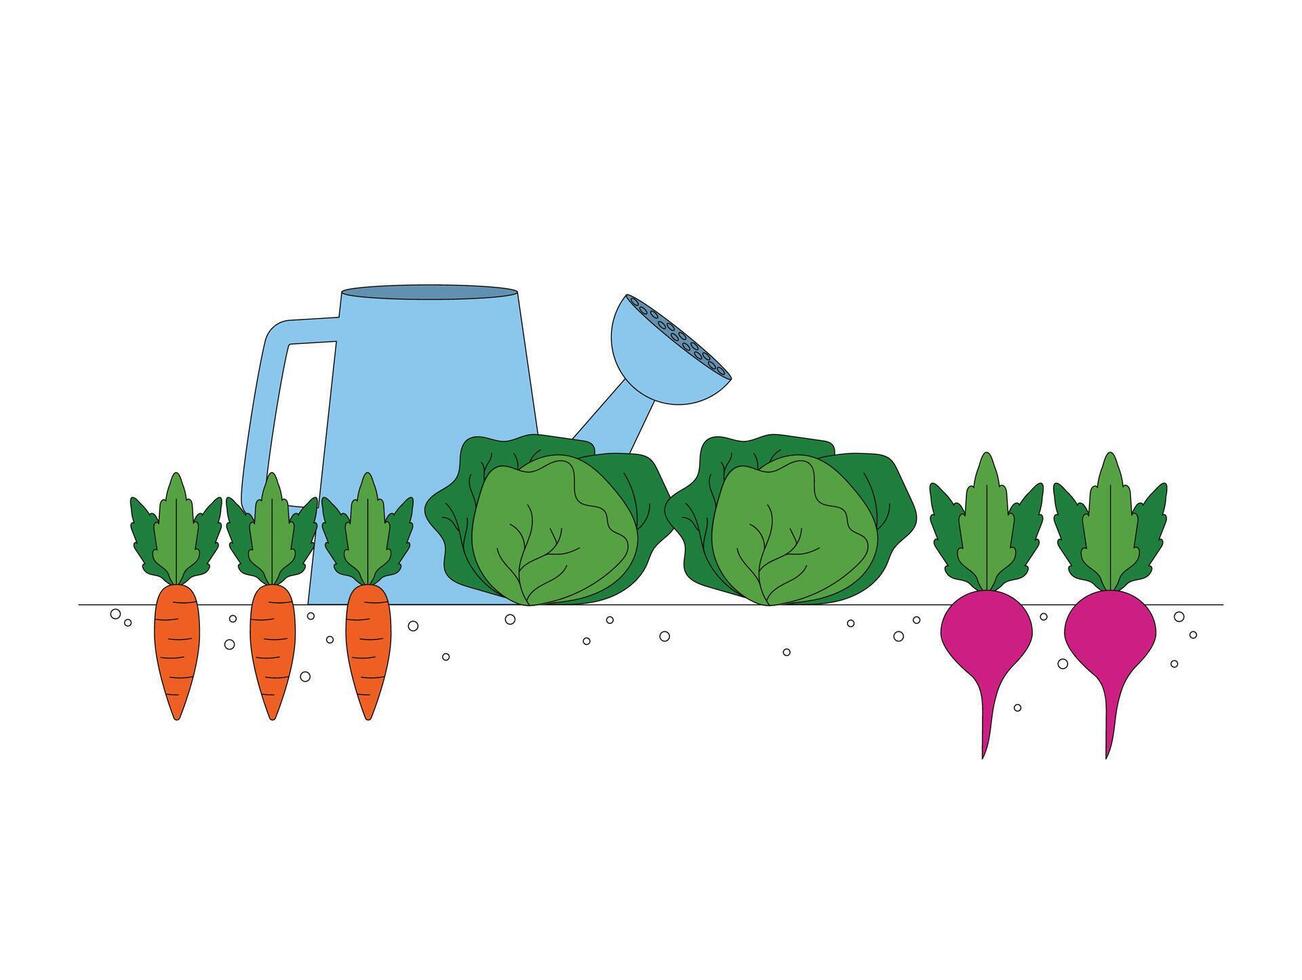 jardinería. cosecha. zanahorias, repollo, remolacha crecido vegetales. vector gráfico.